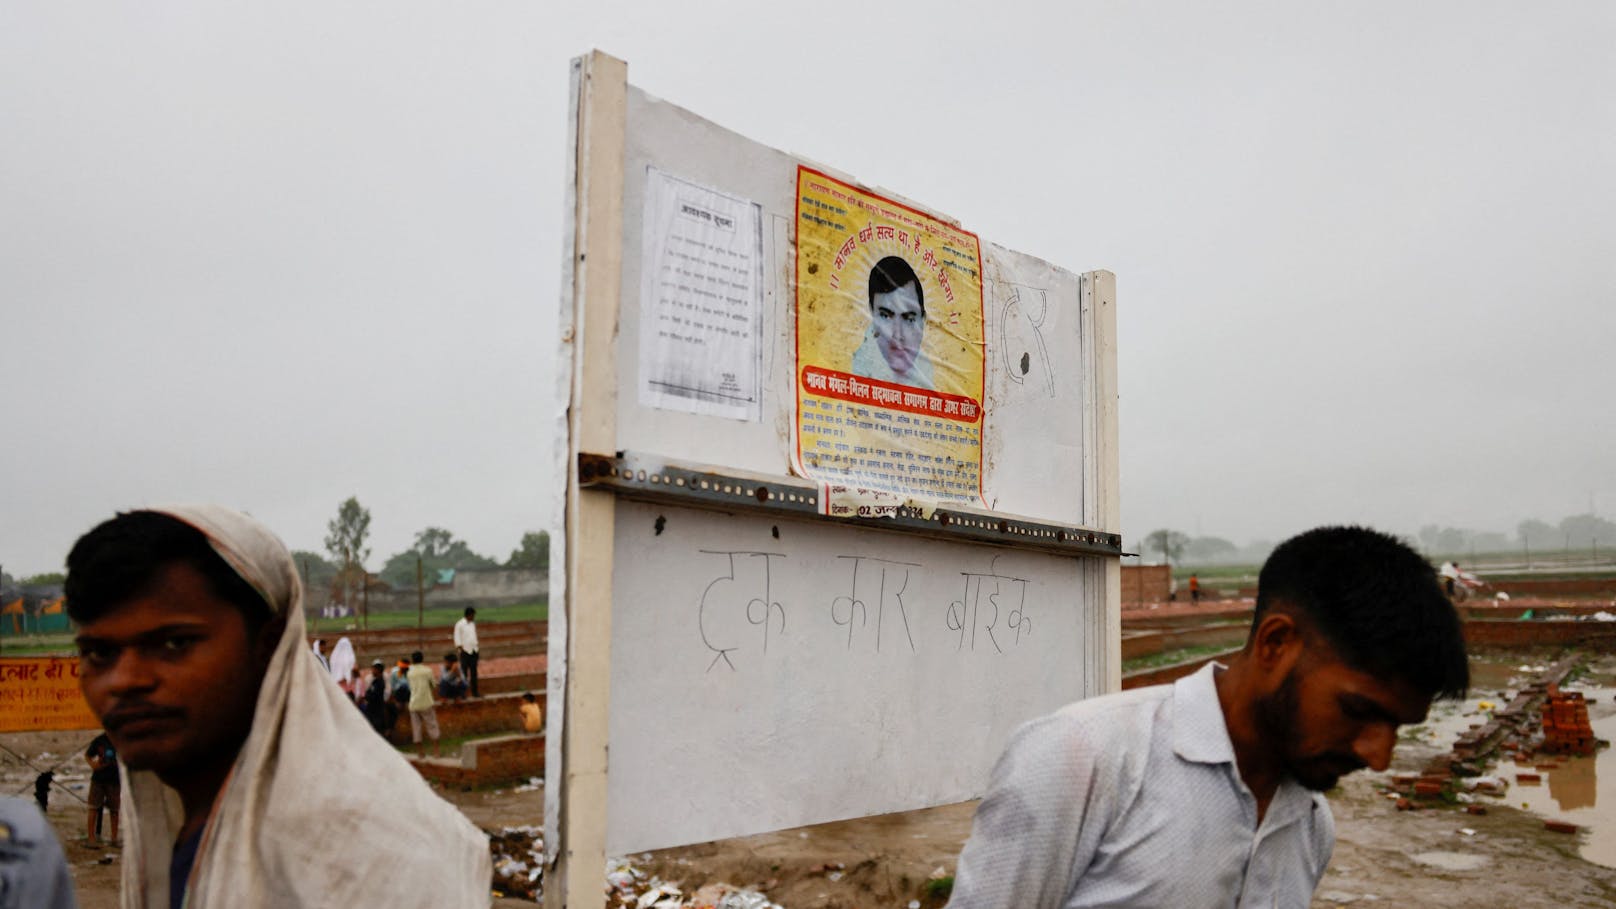 Ein Plakat des Predigers Surajpal, auch bekannt als "Bhole Baba", auf einer Tafel an dem Ort des Unglücks.